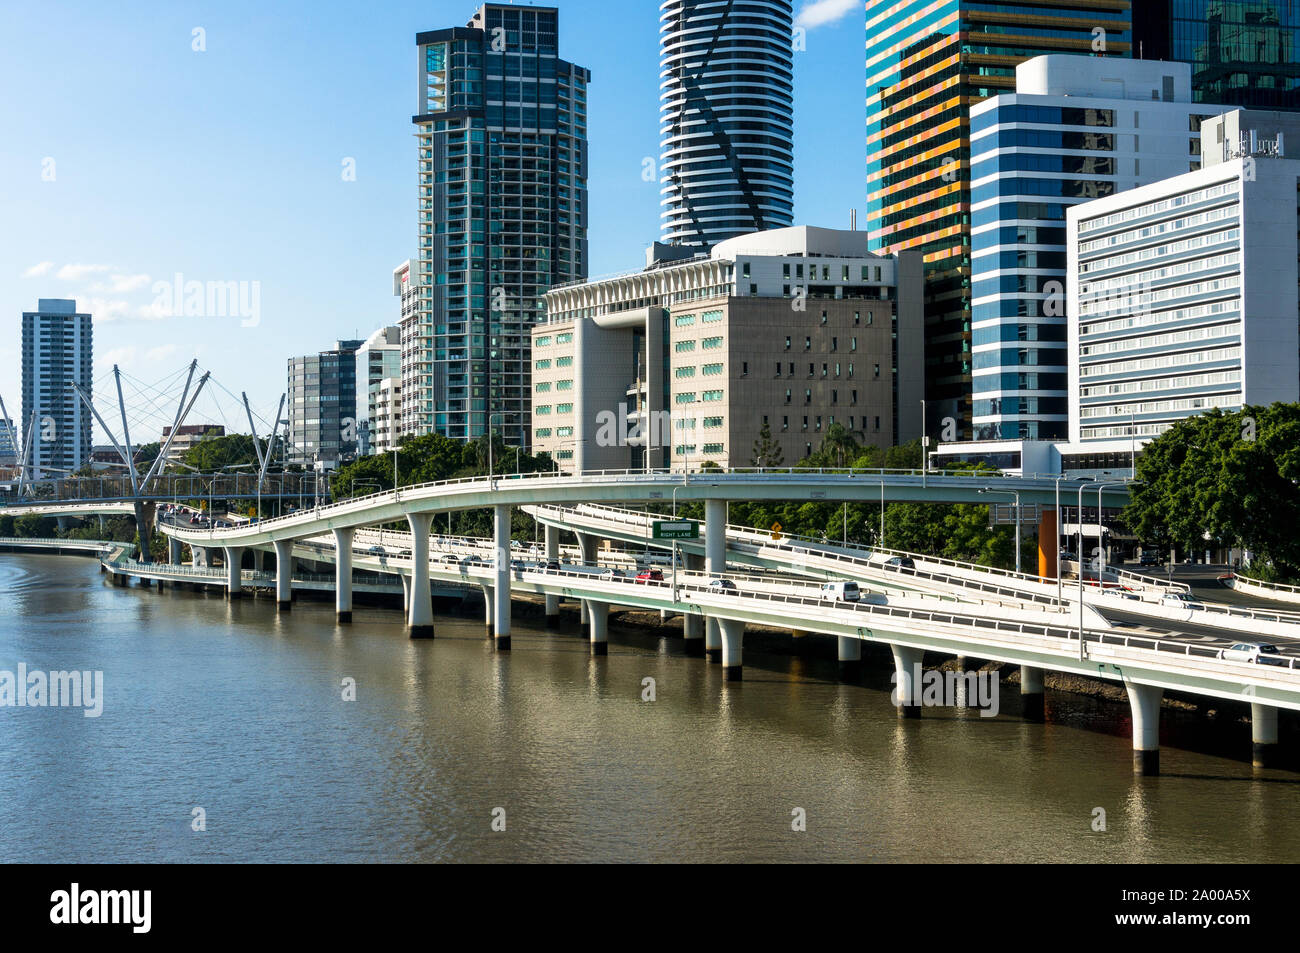 Vue urbaine avec des gratte-ciel modernes et Bridge Road. L'espace pour le texte. Ville moderne sur la rivière. Brisbane, Australie Banque D'Images